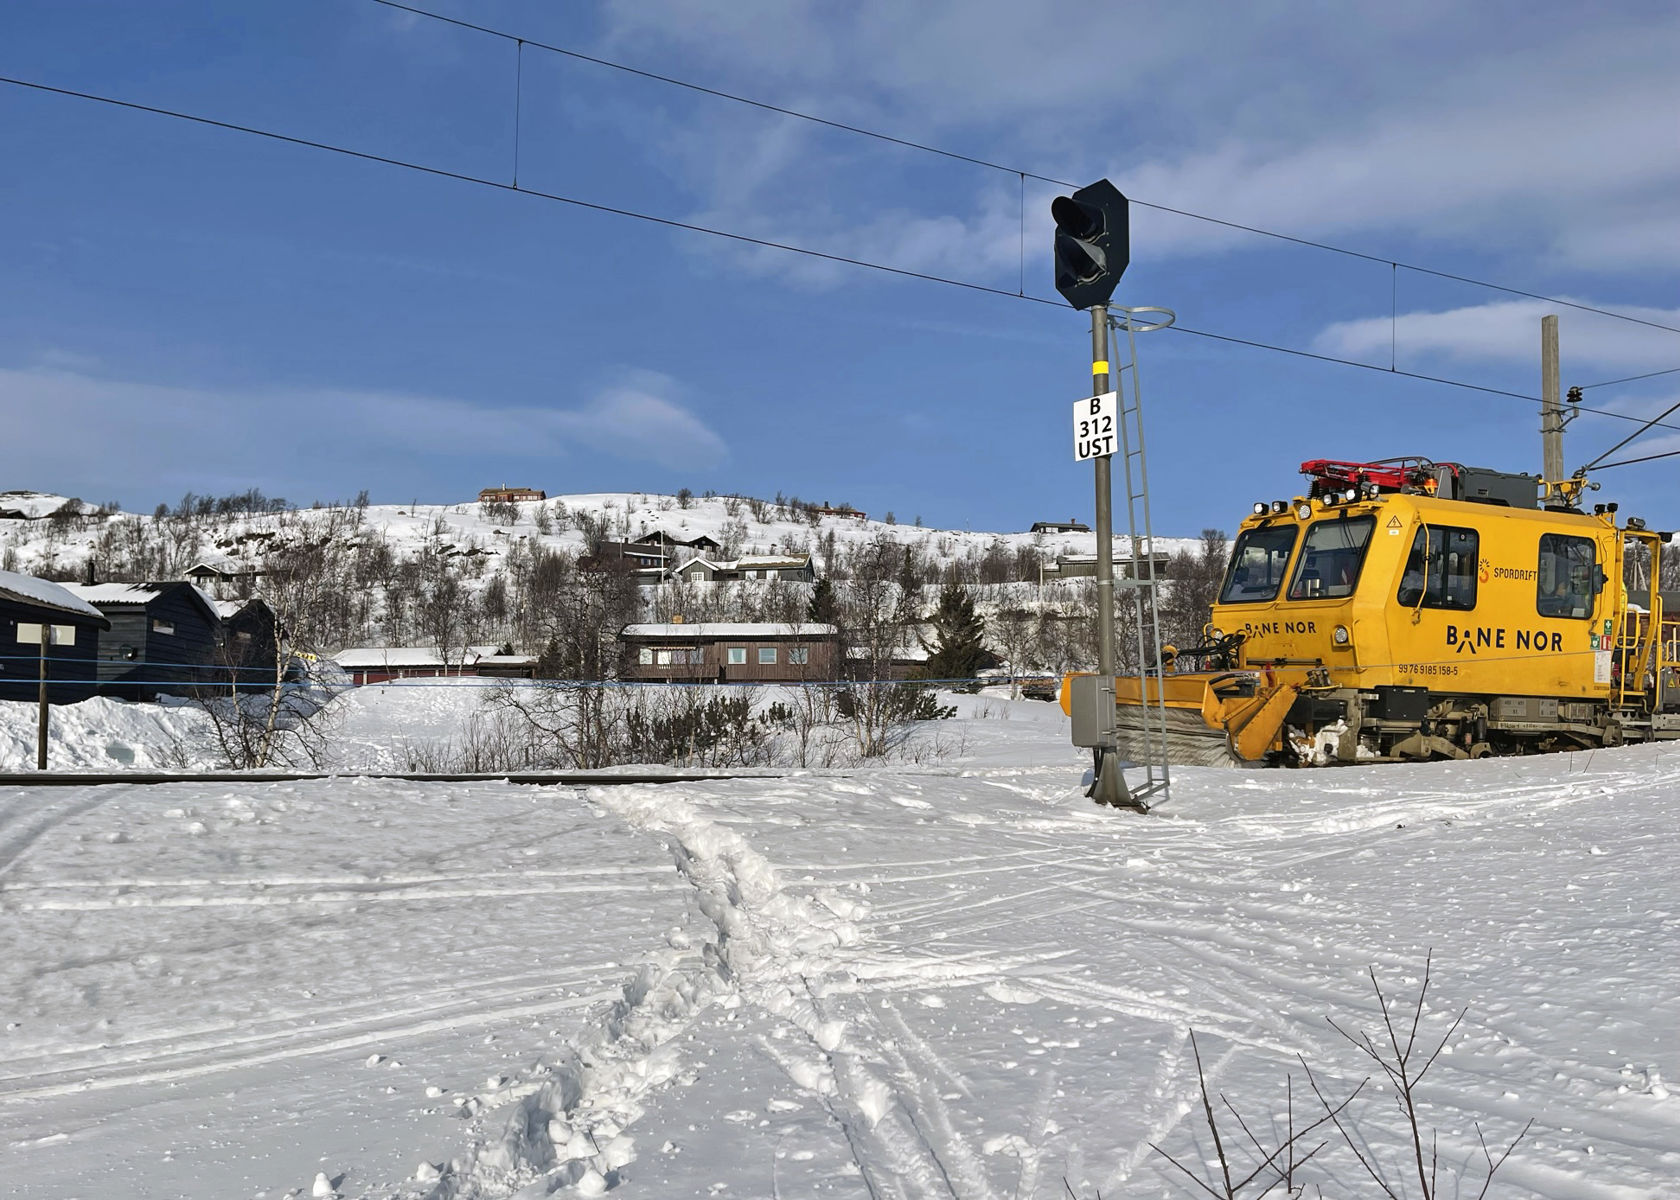 Spor i snøen krysser jernbaneskinnene. En gul arbeidsmaskin fra Bane NOR står på sporet.